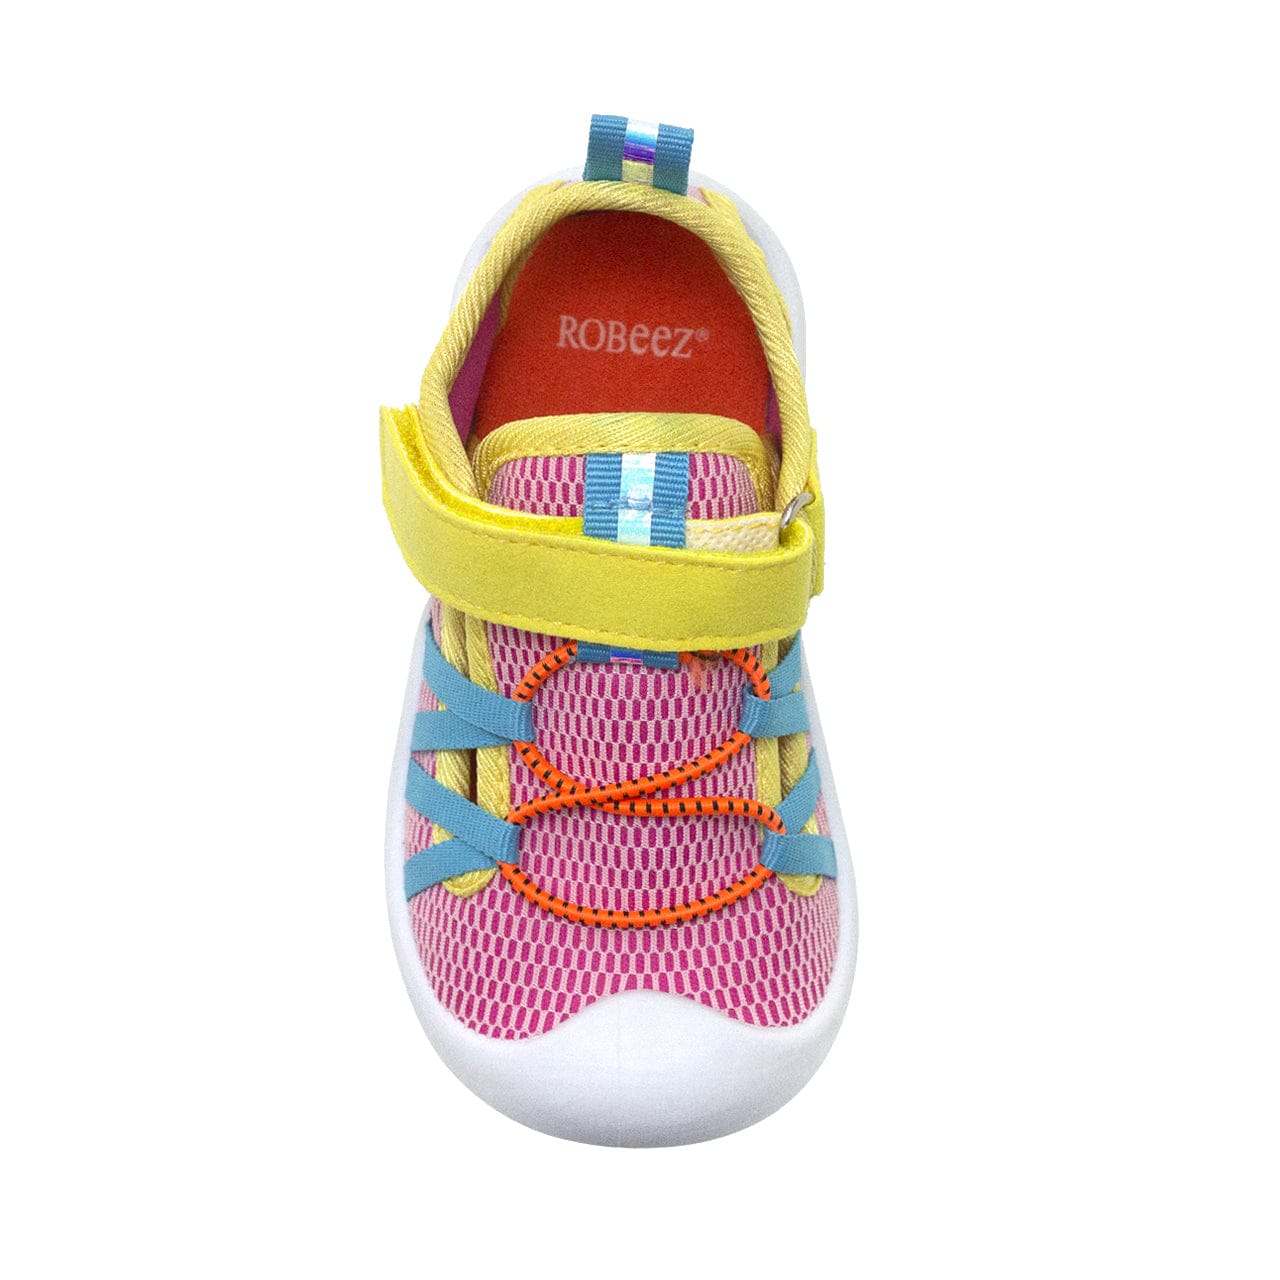 Robeez Footwear Ltd. Robeez Splash Watershoe - Little Miss Muffin Children & Home